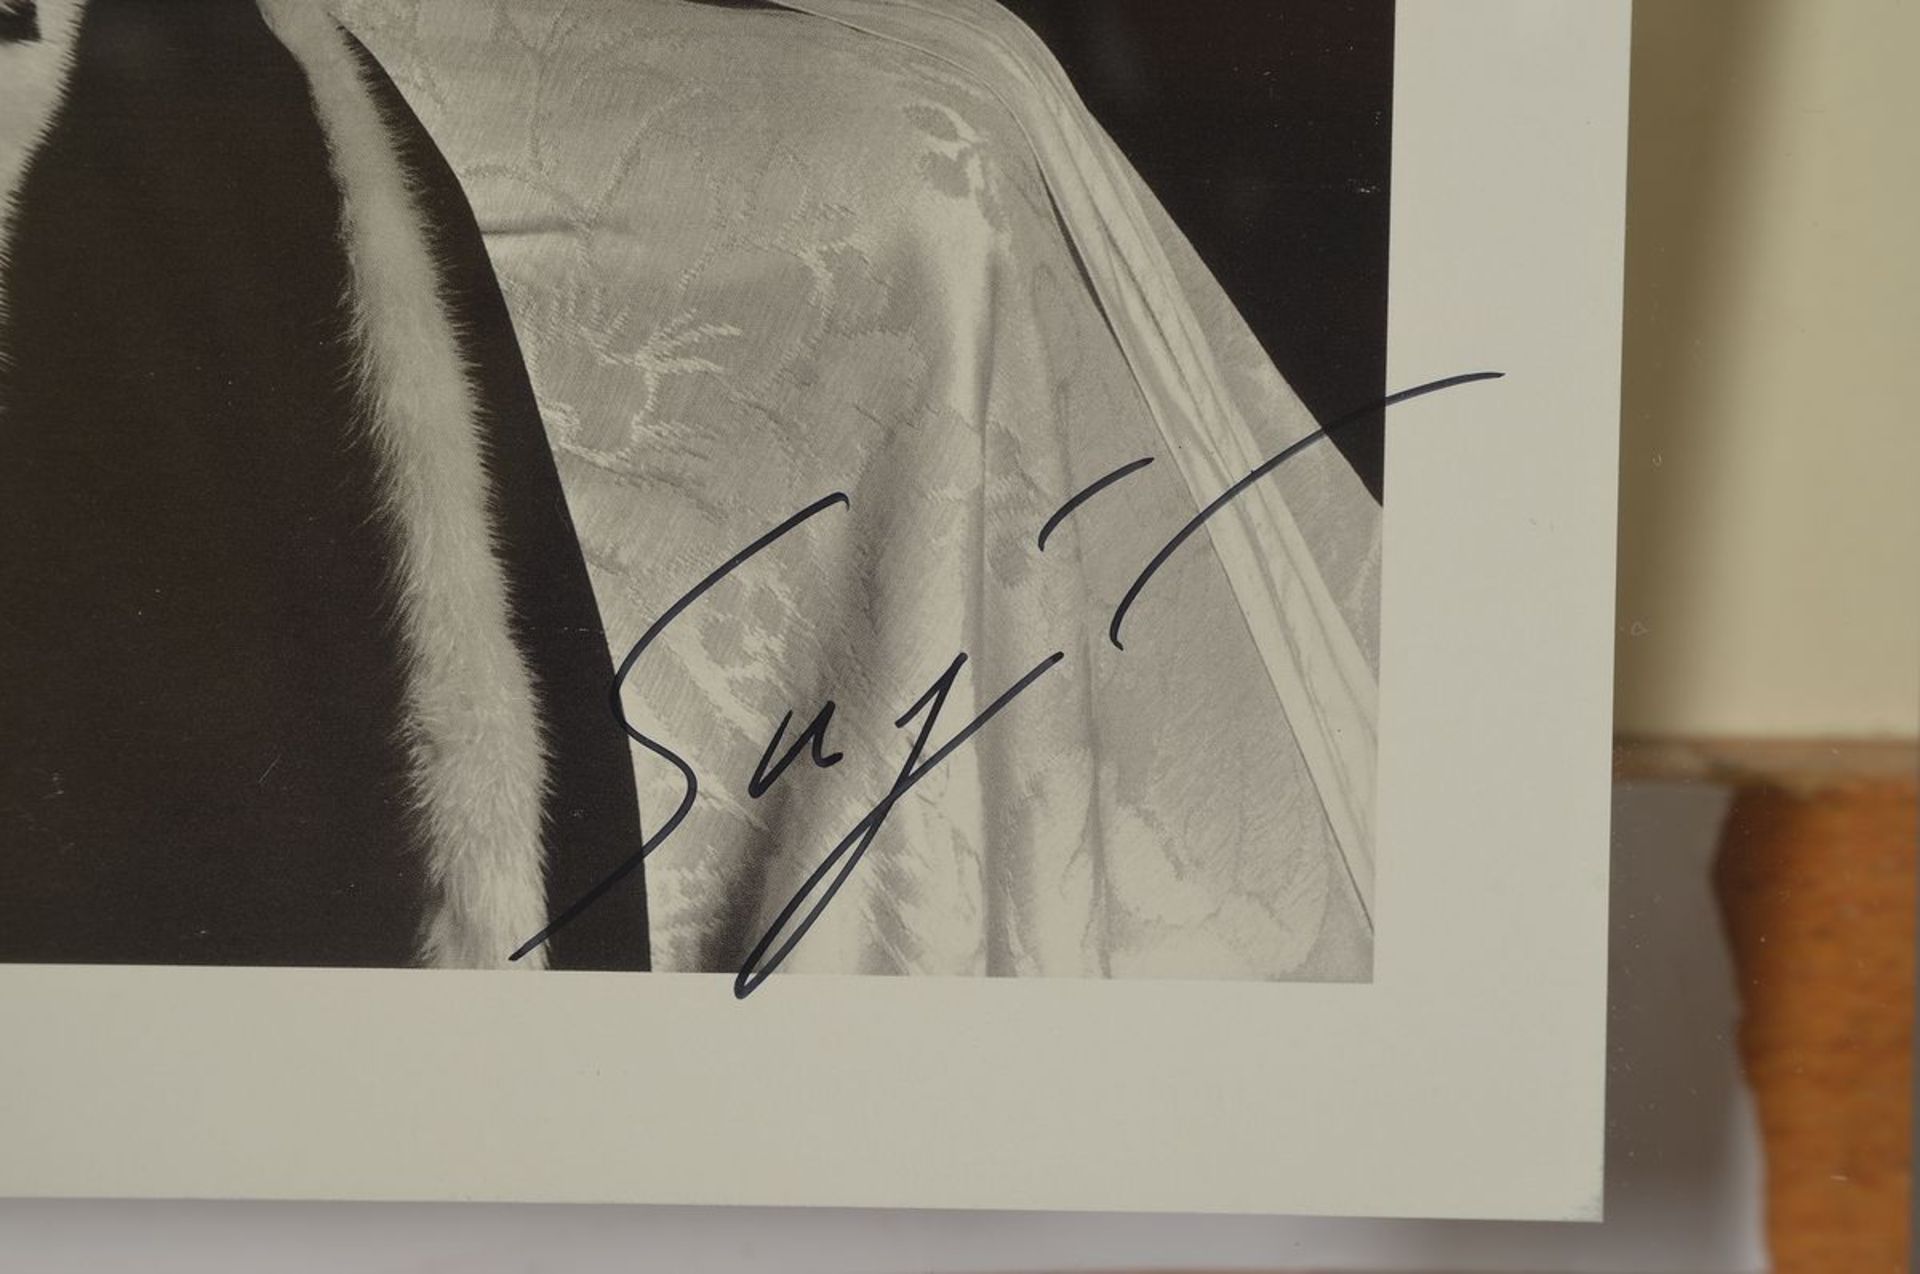 Hiroshi Sugimoto, geb. 1948, "Catherine of Aragon", Offsetdruck, handsign., leichte knicke - Bild 2 aus 2